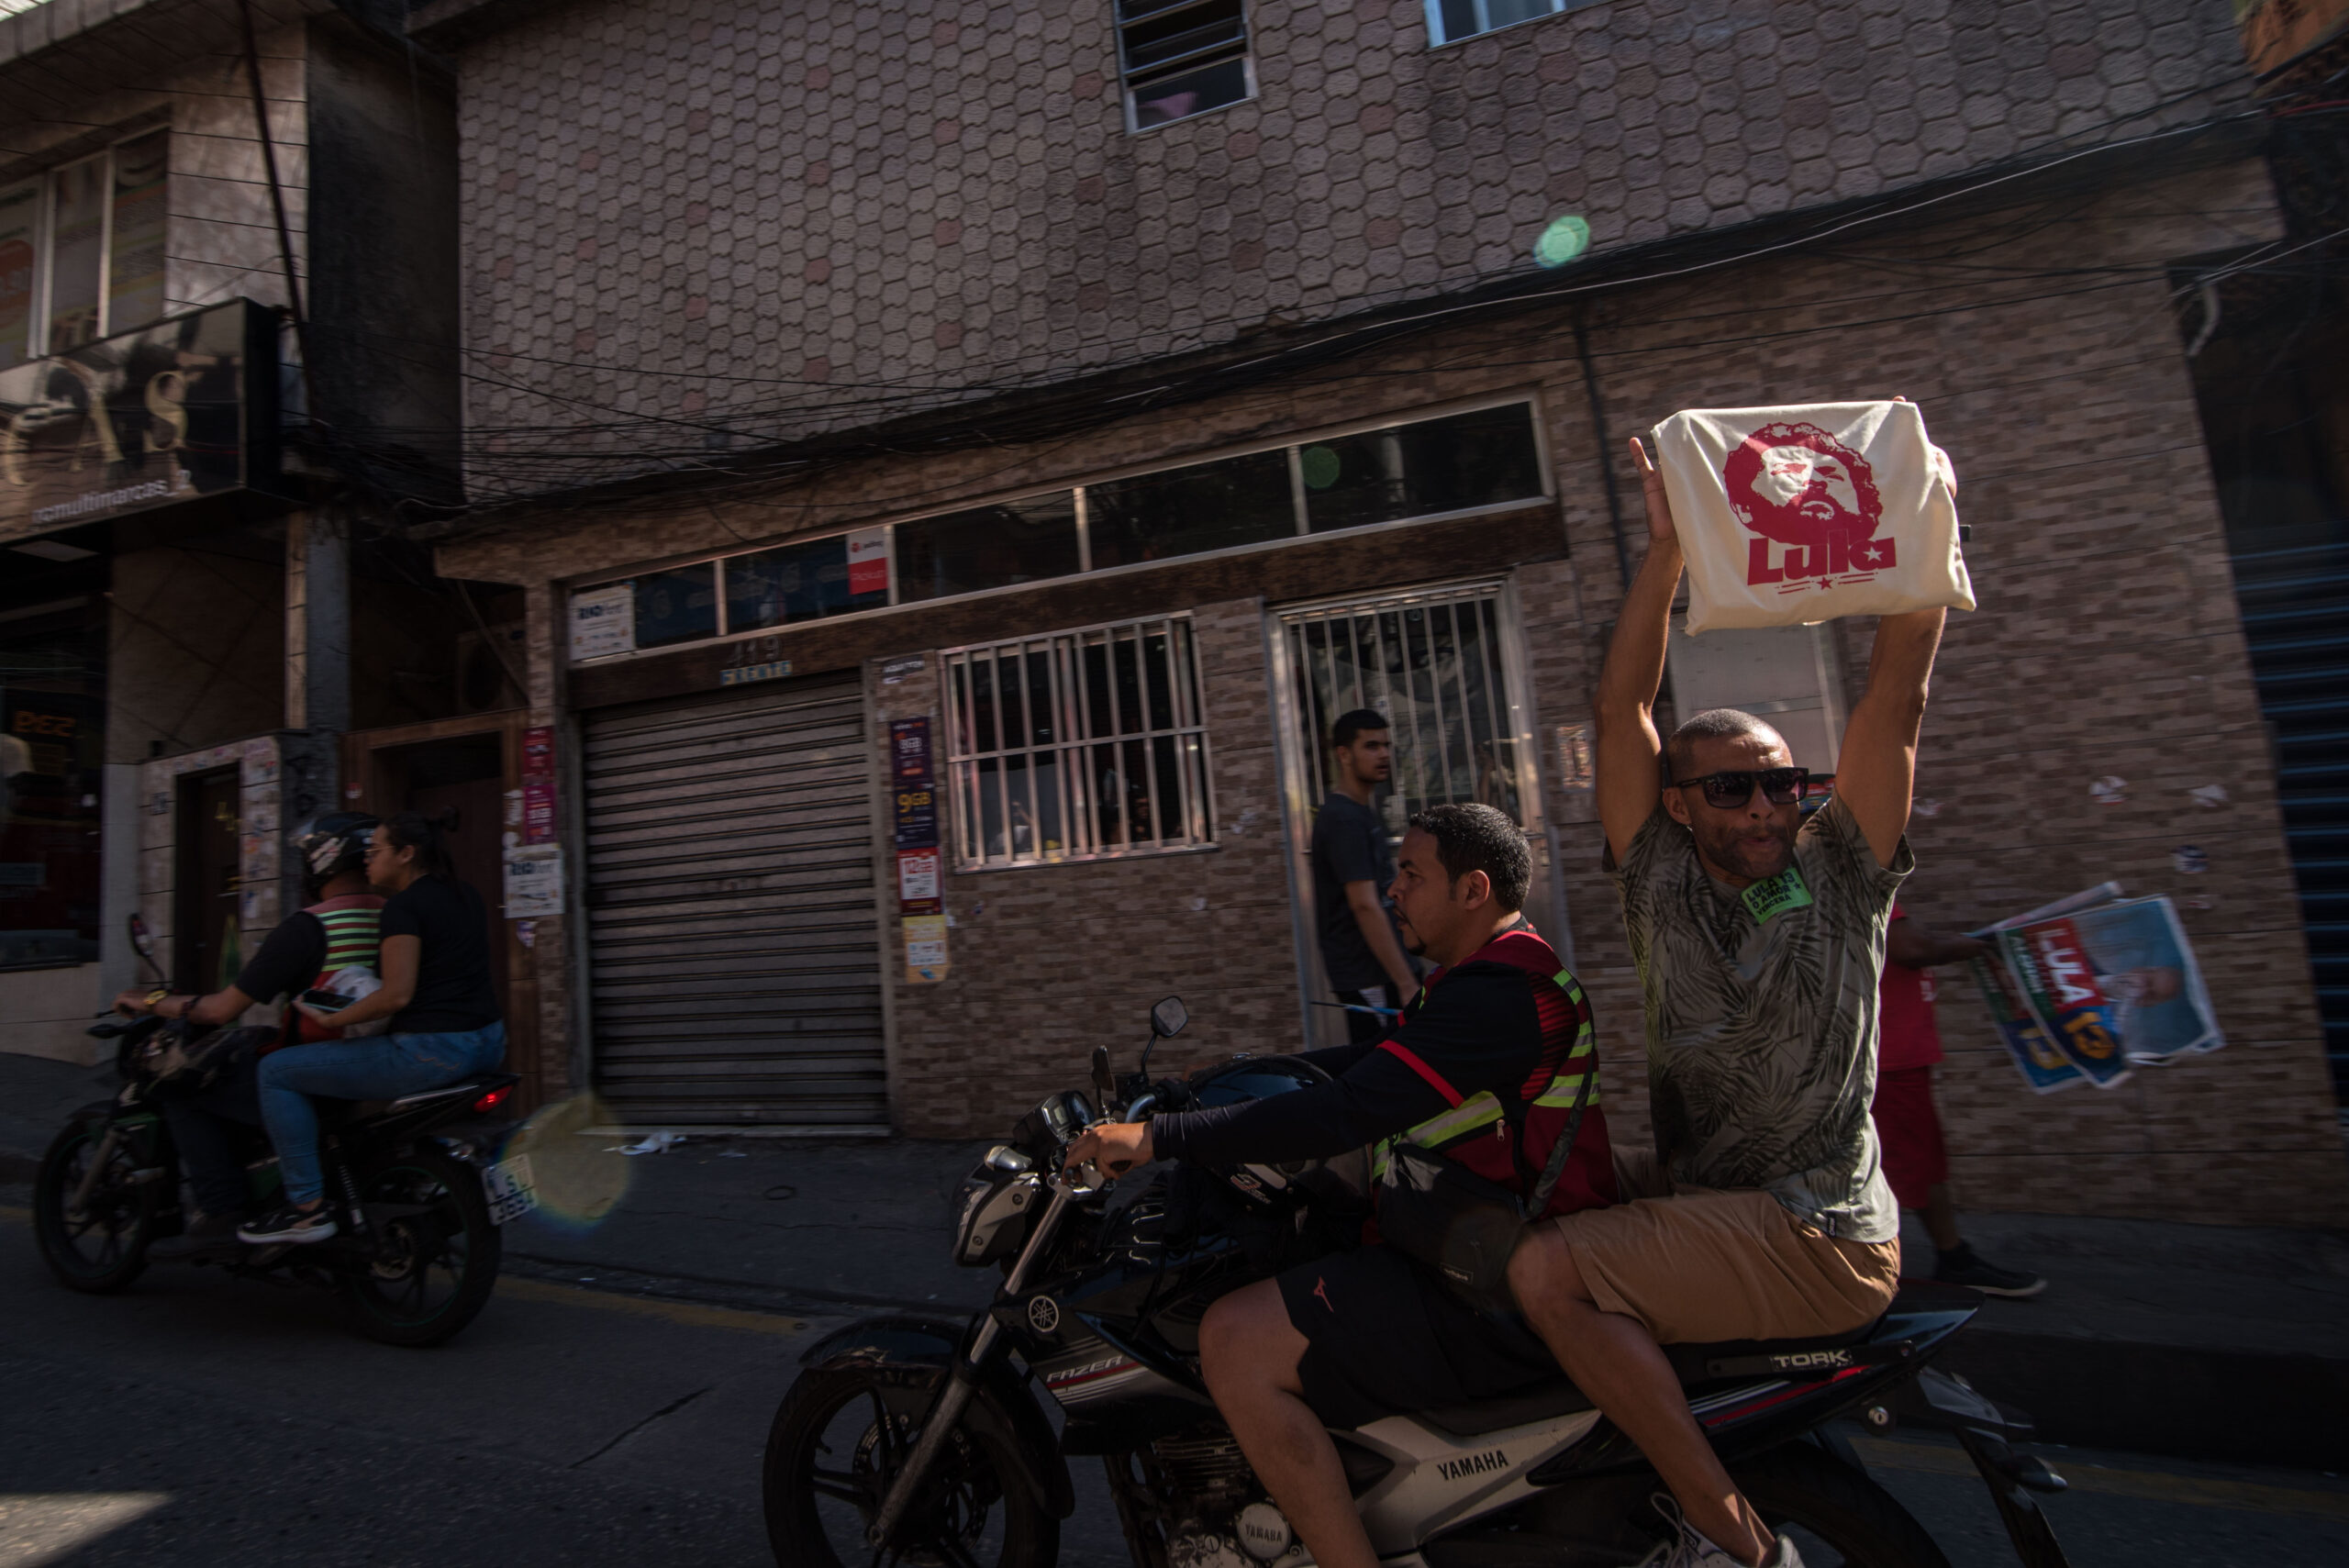 Passageiro de uma moto, ao passar pela Caminhada Rocinha com Lula, mostra uma bolsa estampada com a cara de Lula, em apoio à caminhada e à candidatura do petista. Foto: Bárbara Dias/RioOnWatch